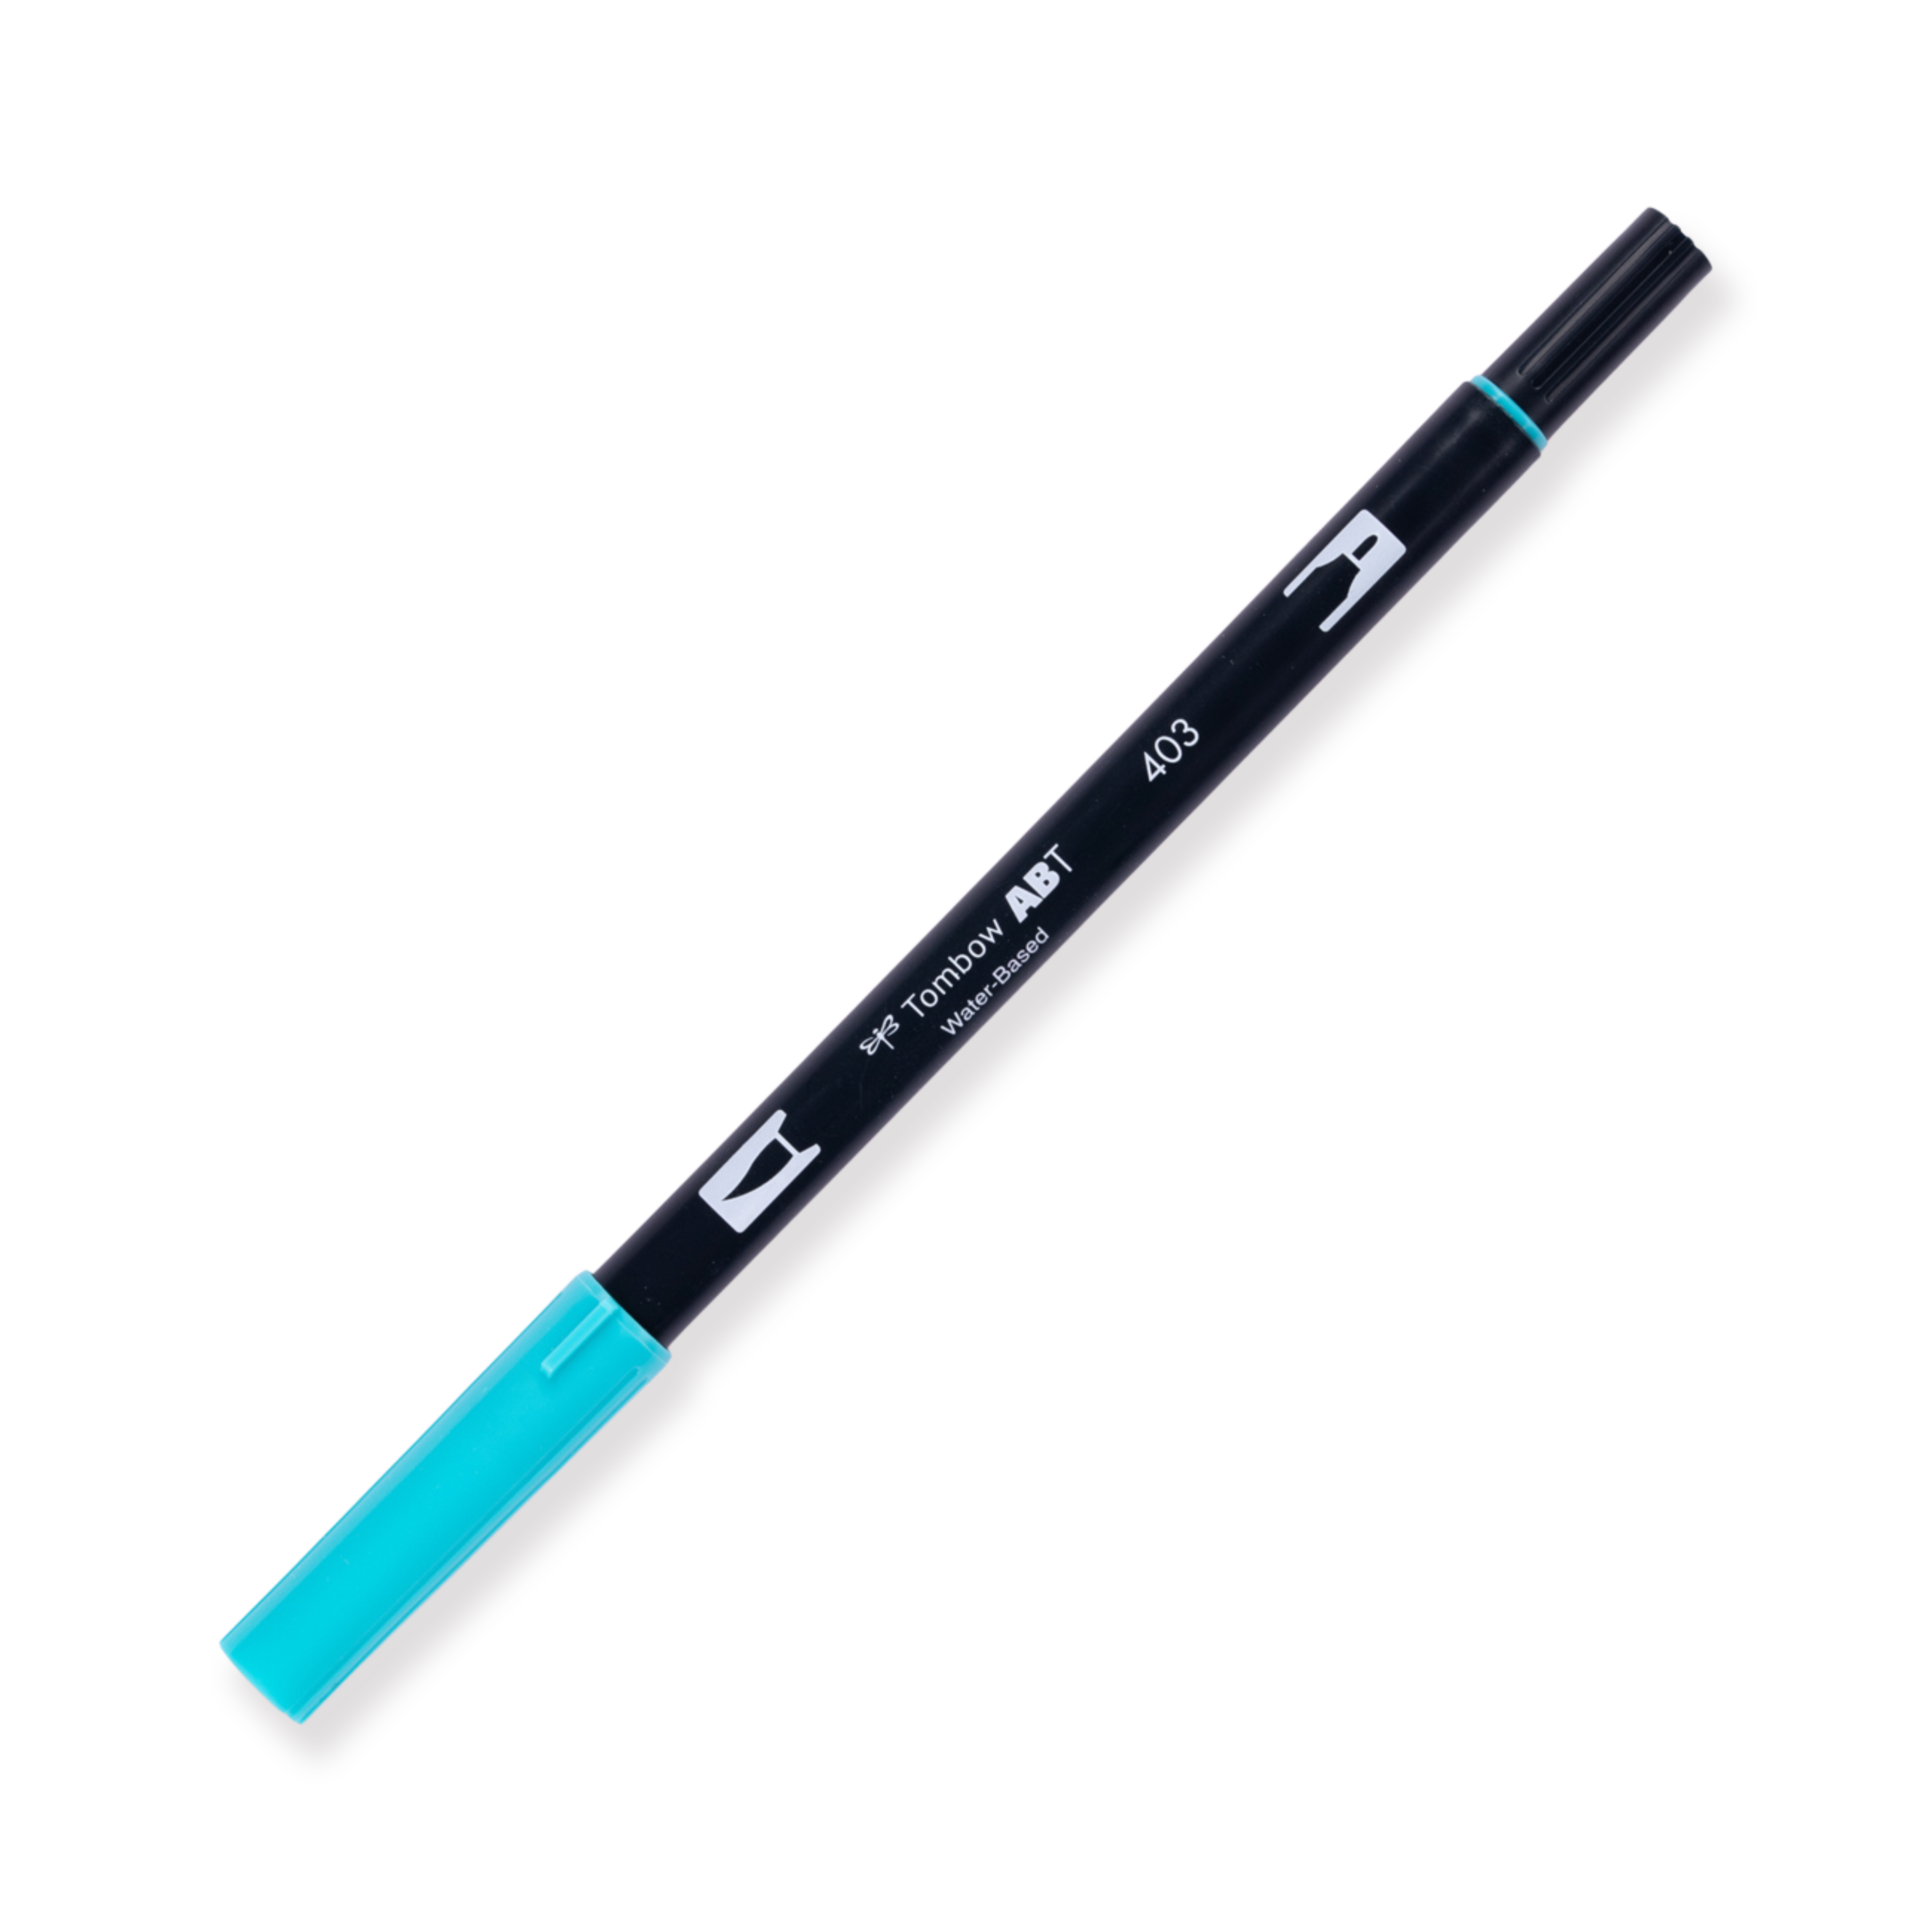 Tombow Dual Brush Pen - 403 - Bright Blue